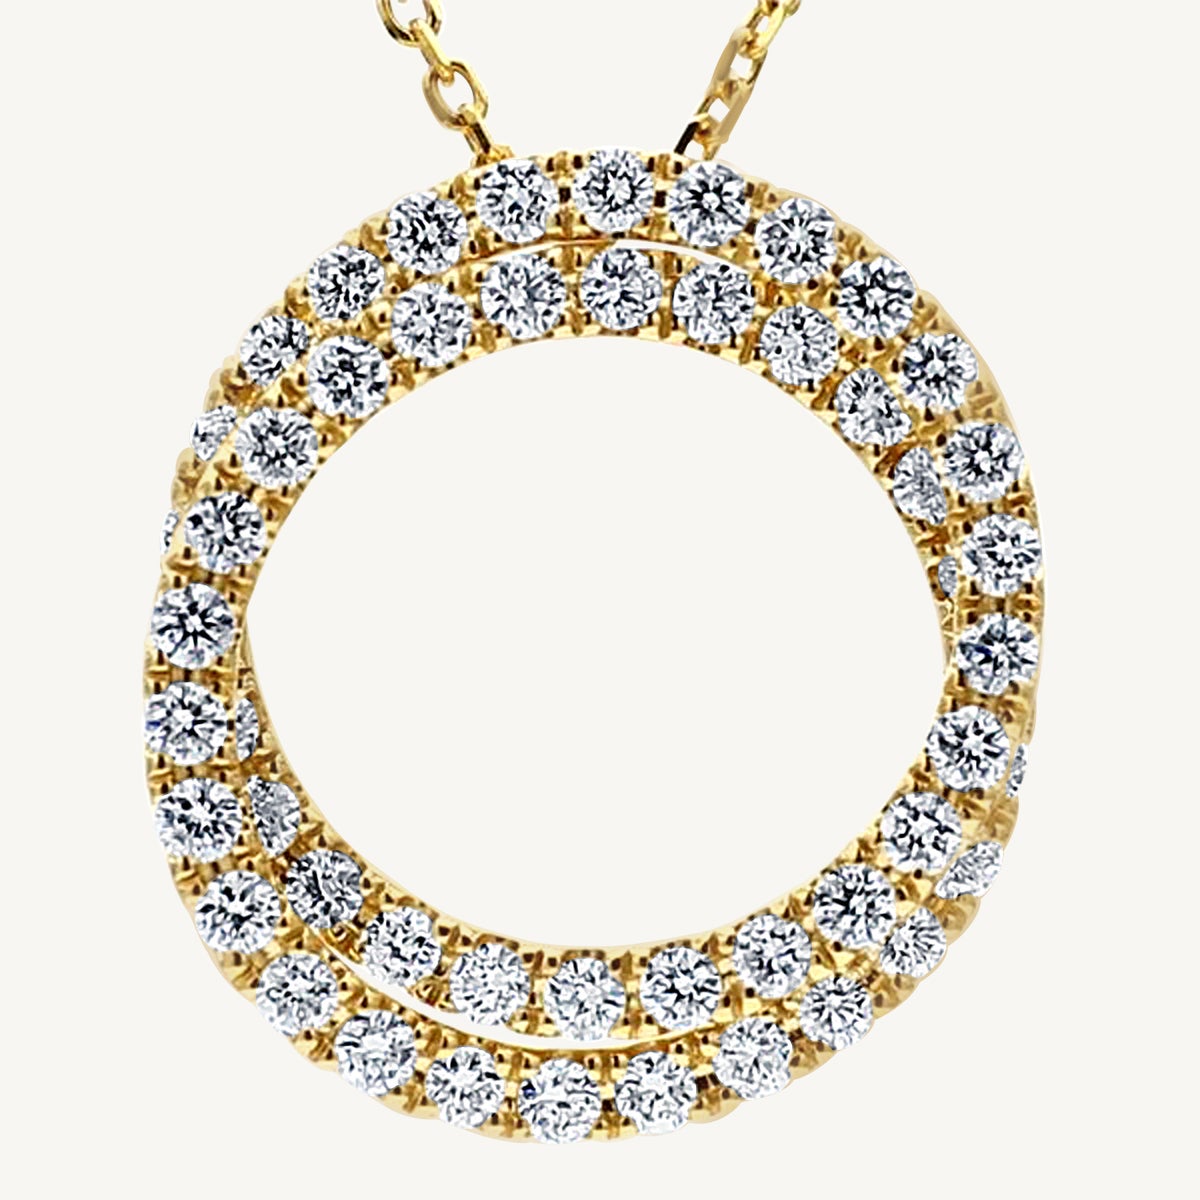 Pendentif circulaire en or jaune avec diamants ronds blancs naturels de 1,20 carat poids total